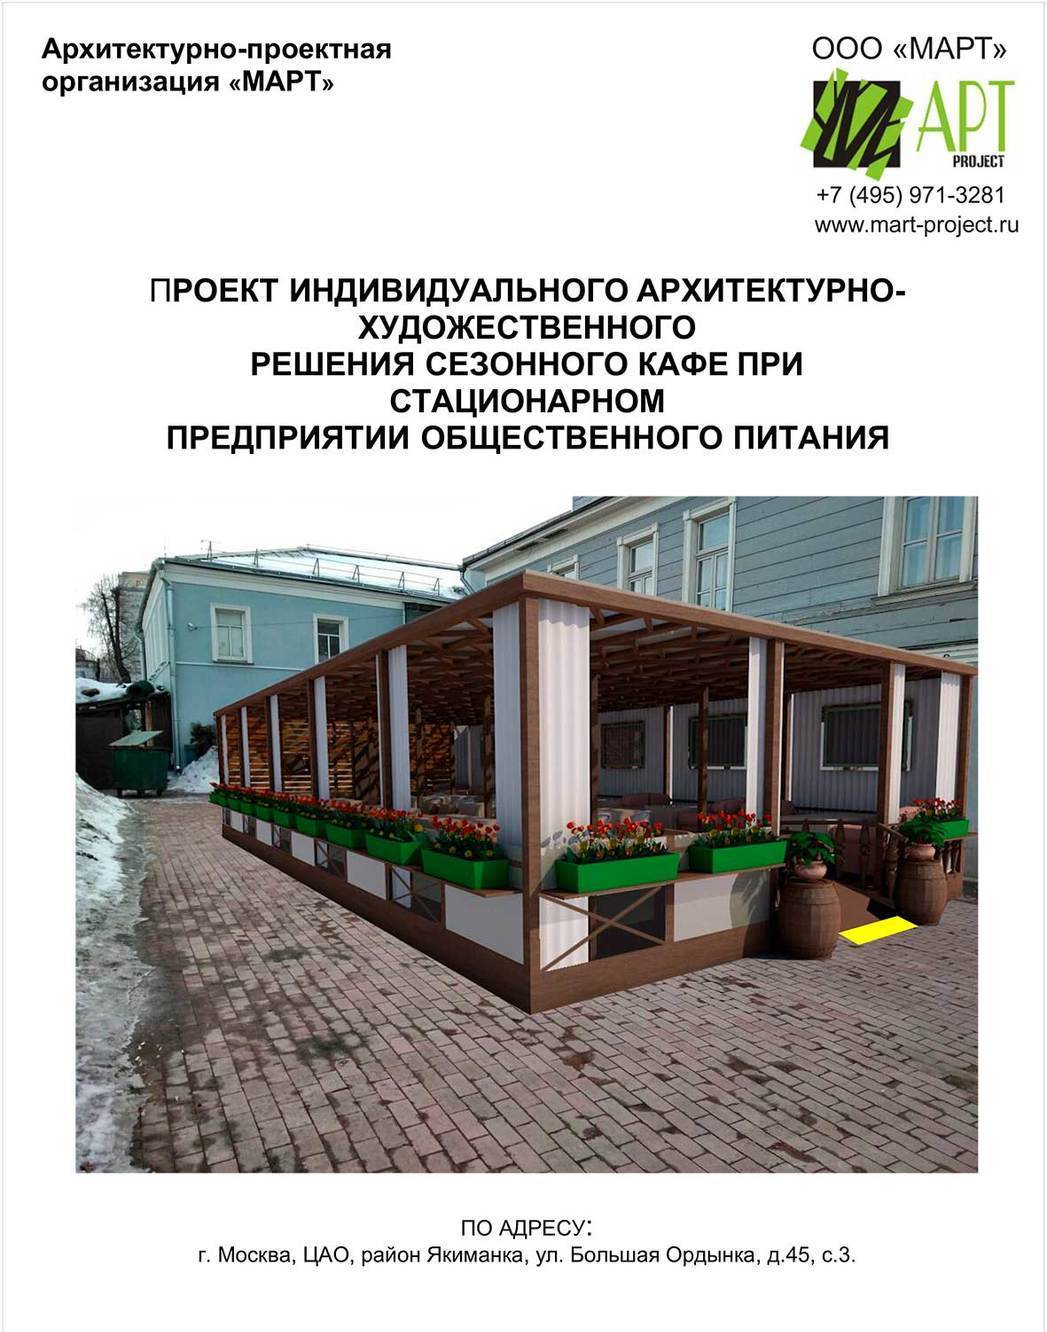 Дизайн-проект летнего кафе для согласования в г. Москве по 102-ПП